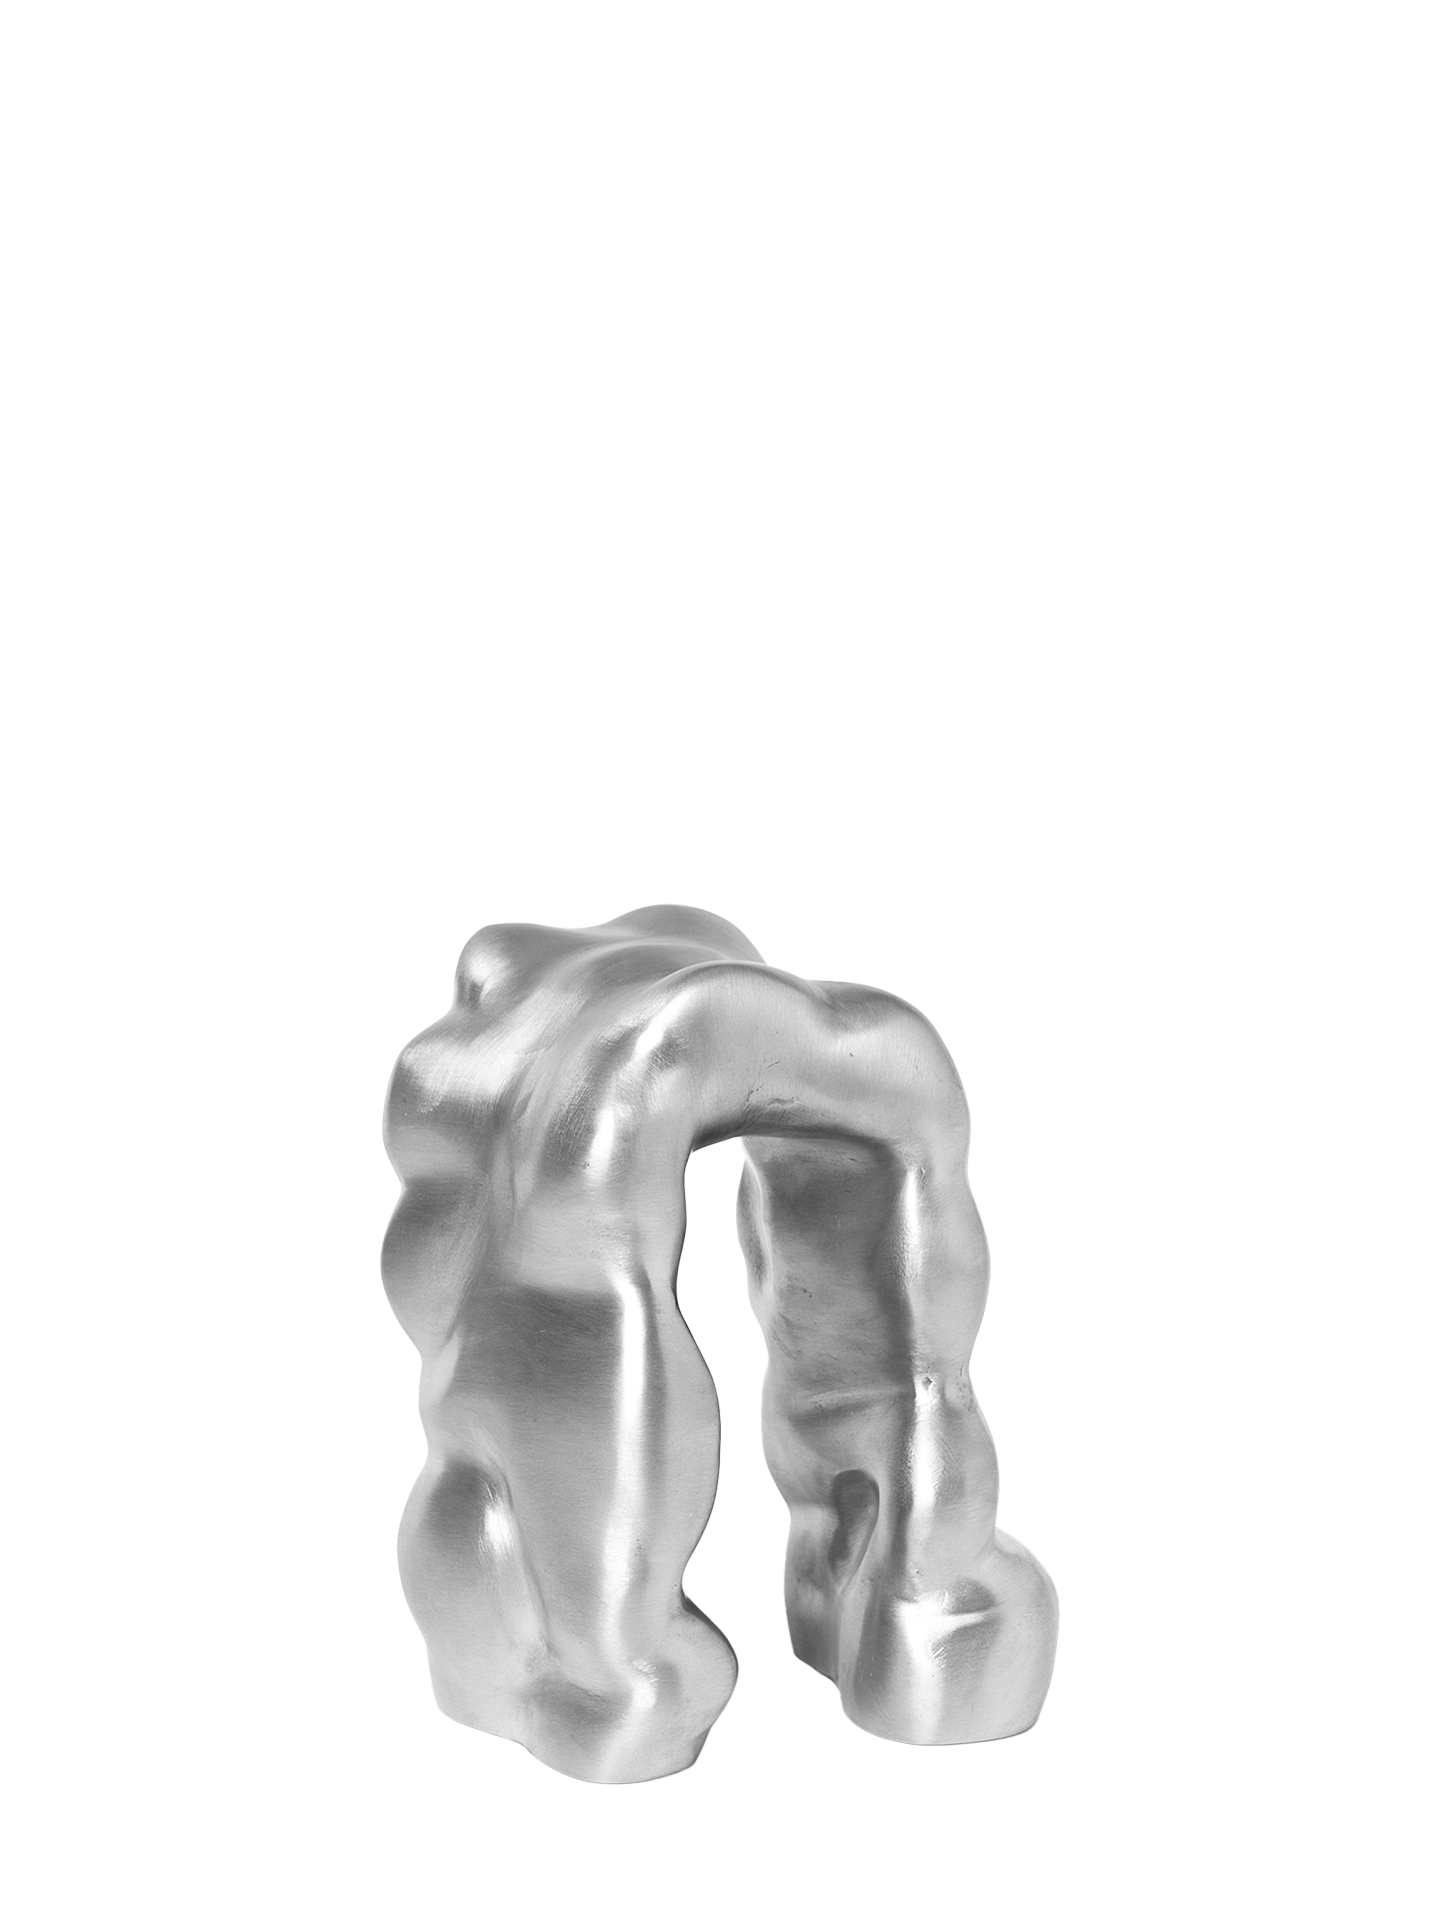 Morf Sculpture - Brushed Aluminium